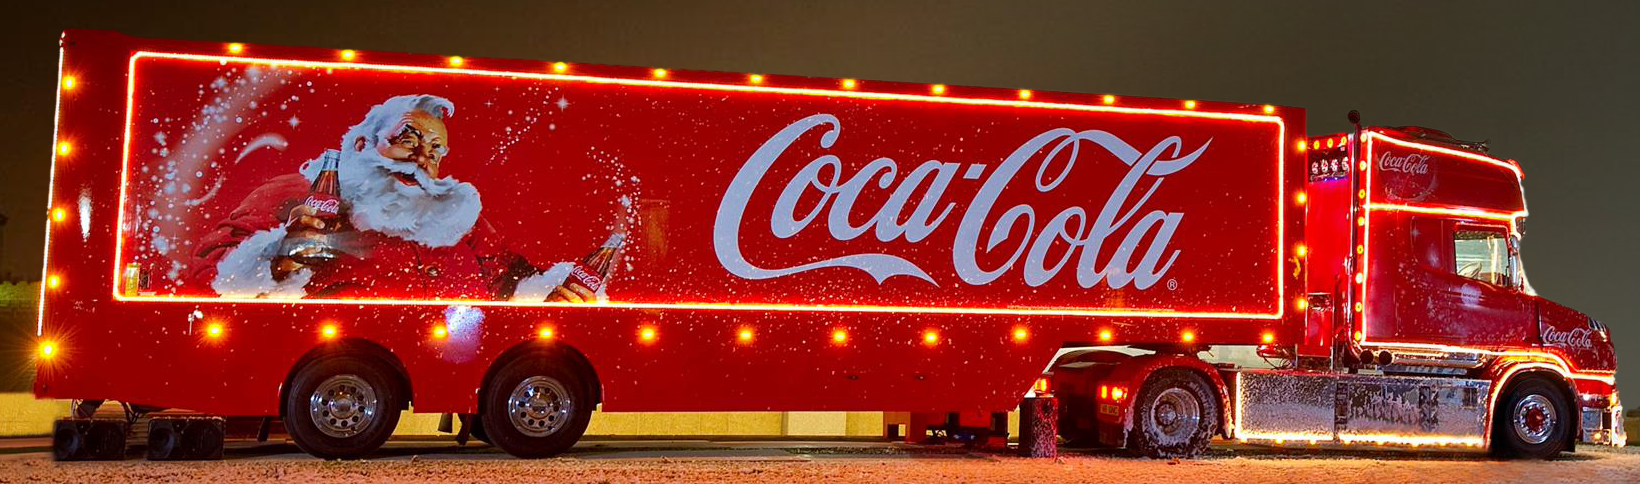 Грузовики деда мороза. Coca Cola грузовик сбоку. Грузовик Деда Мороза Кока кола. Грузовик Кока колы 1995 год. Новогодние Грузовики Coca-Cola.